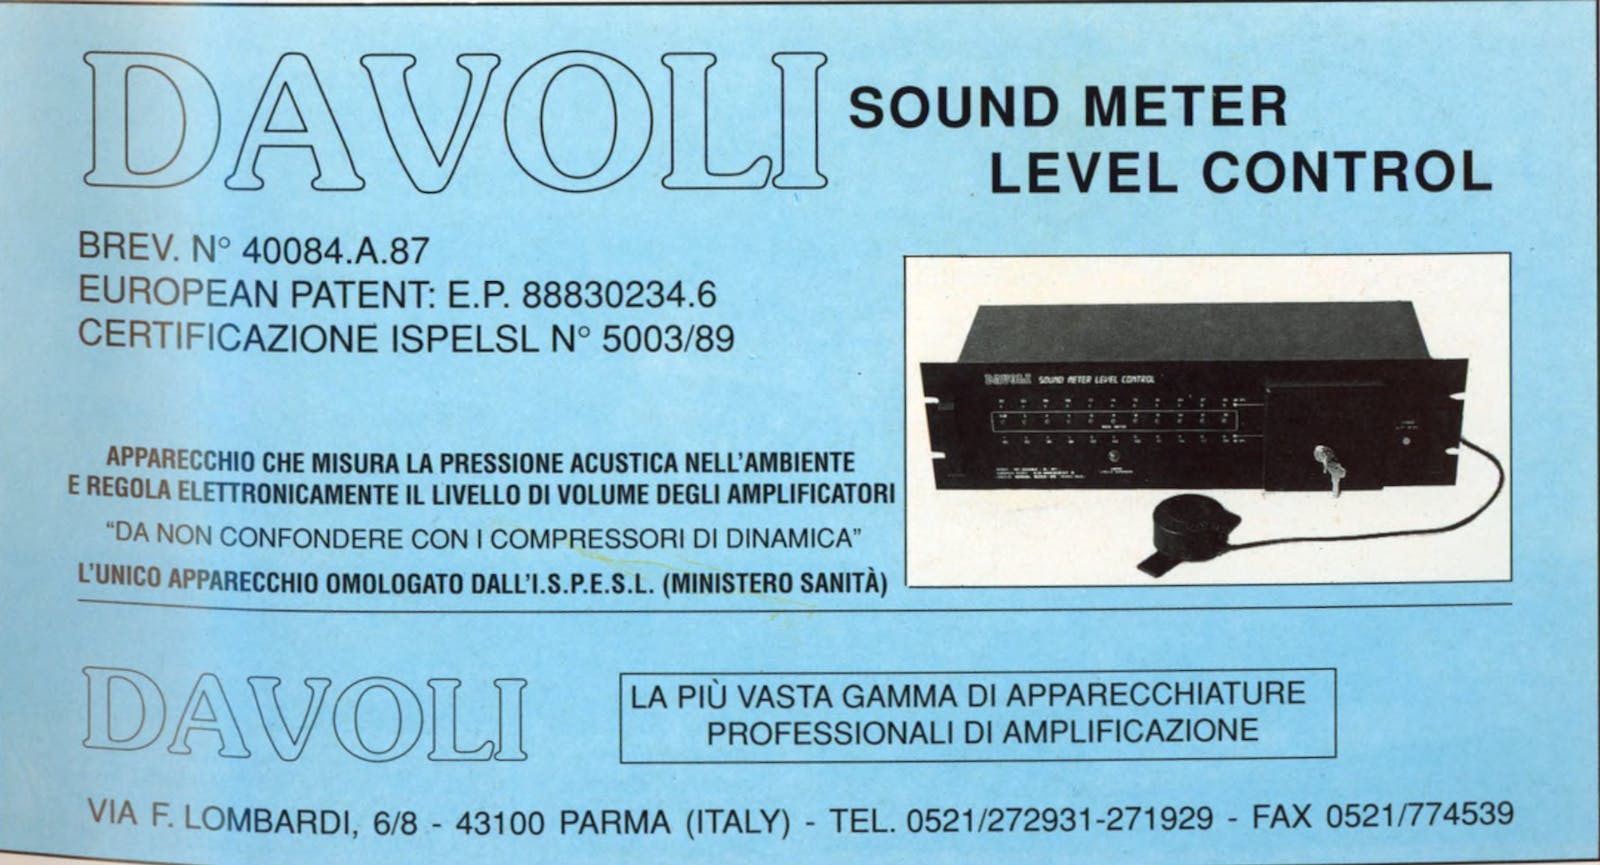 Pubblicità Davoli: Sound Meter Level Control